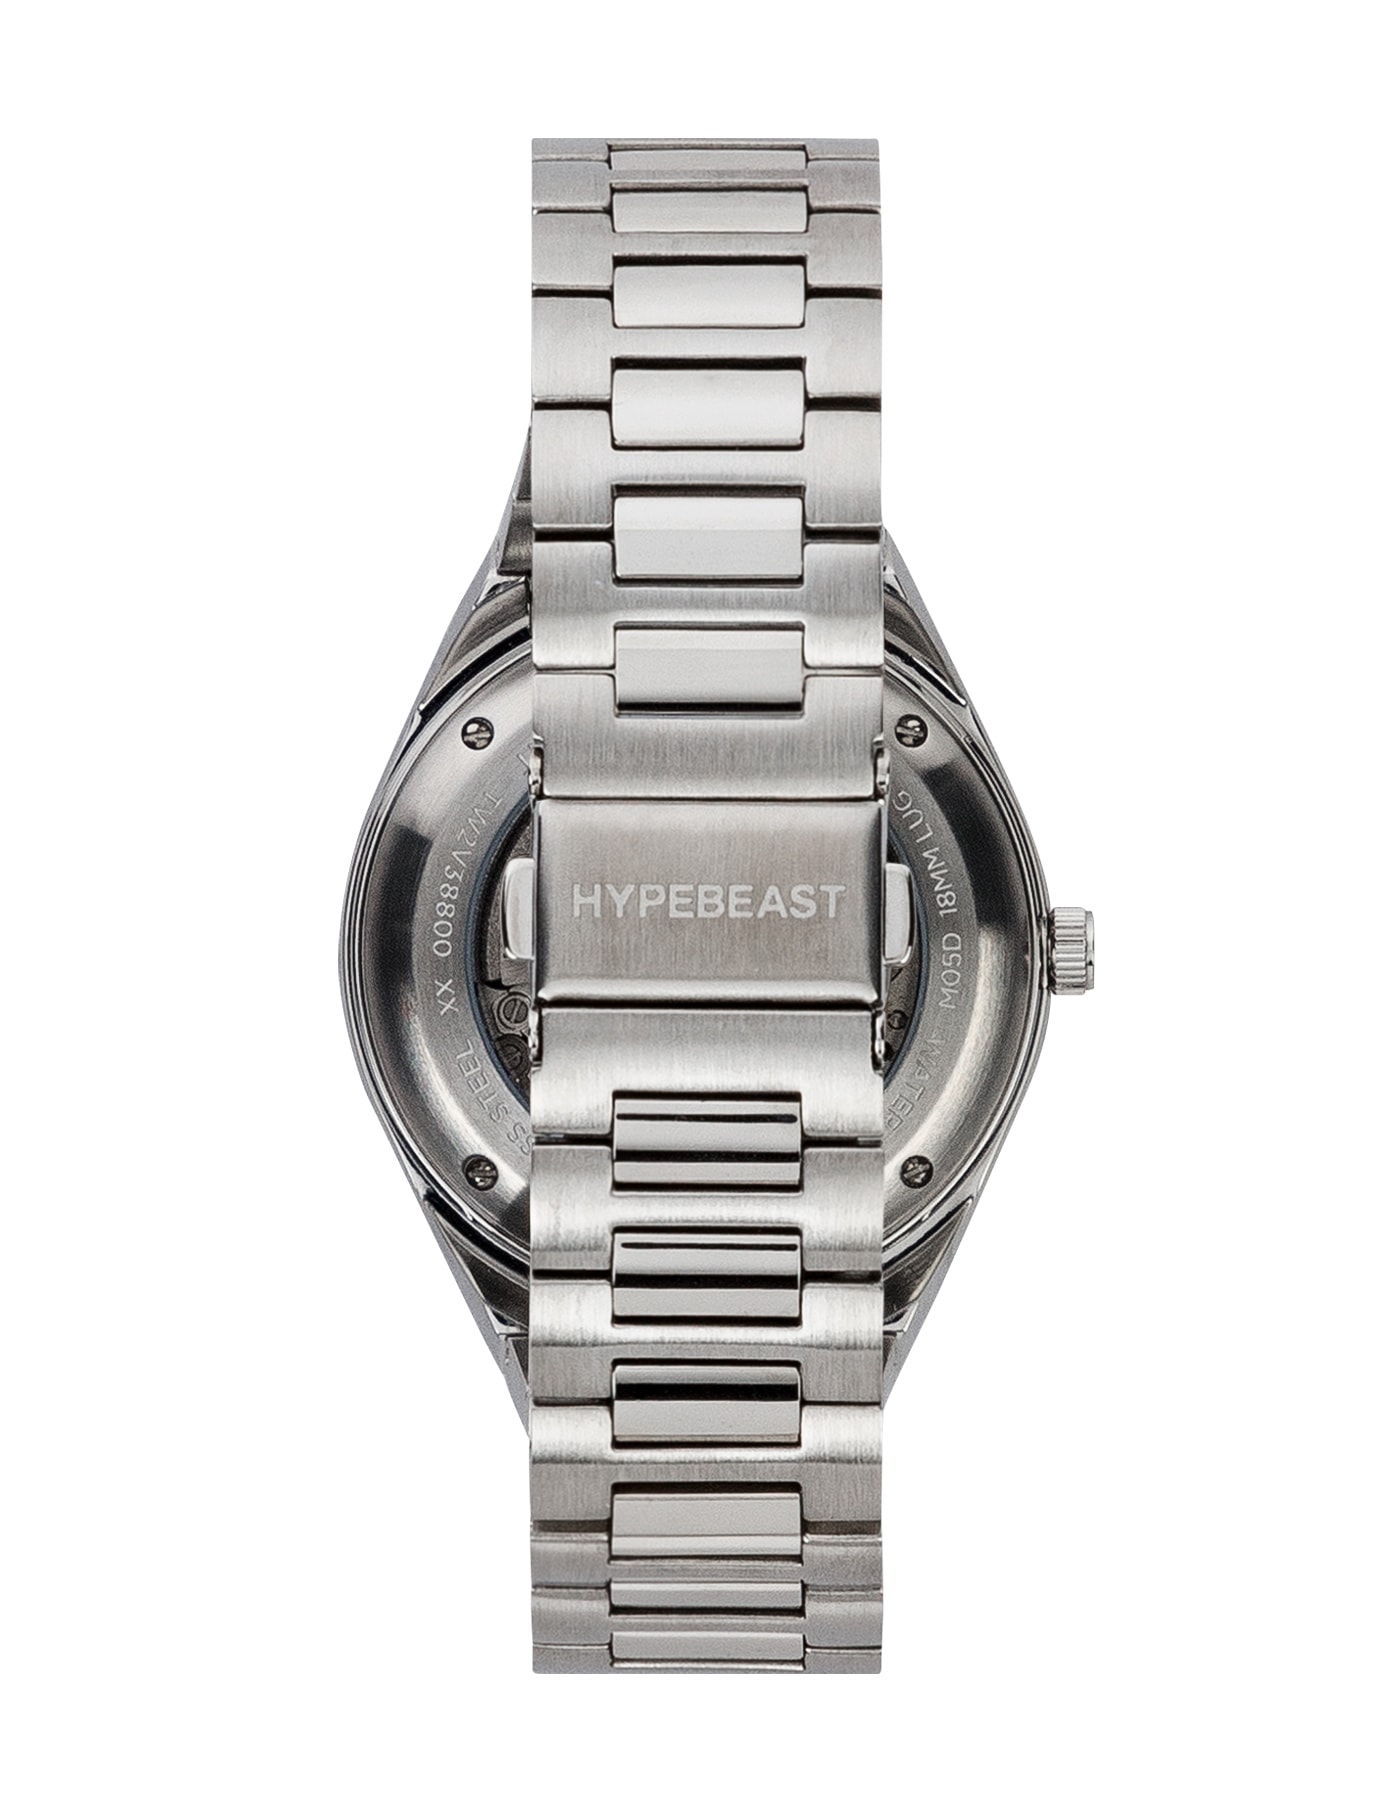 HYPEBEAST x Timex M79「Fuchsia」全新聯乘錶款 HBX 正式開售